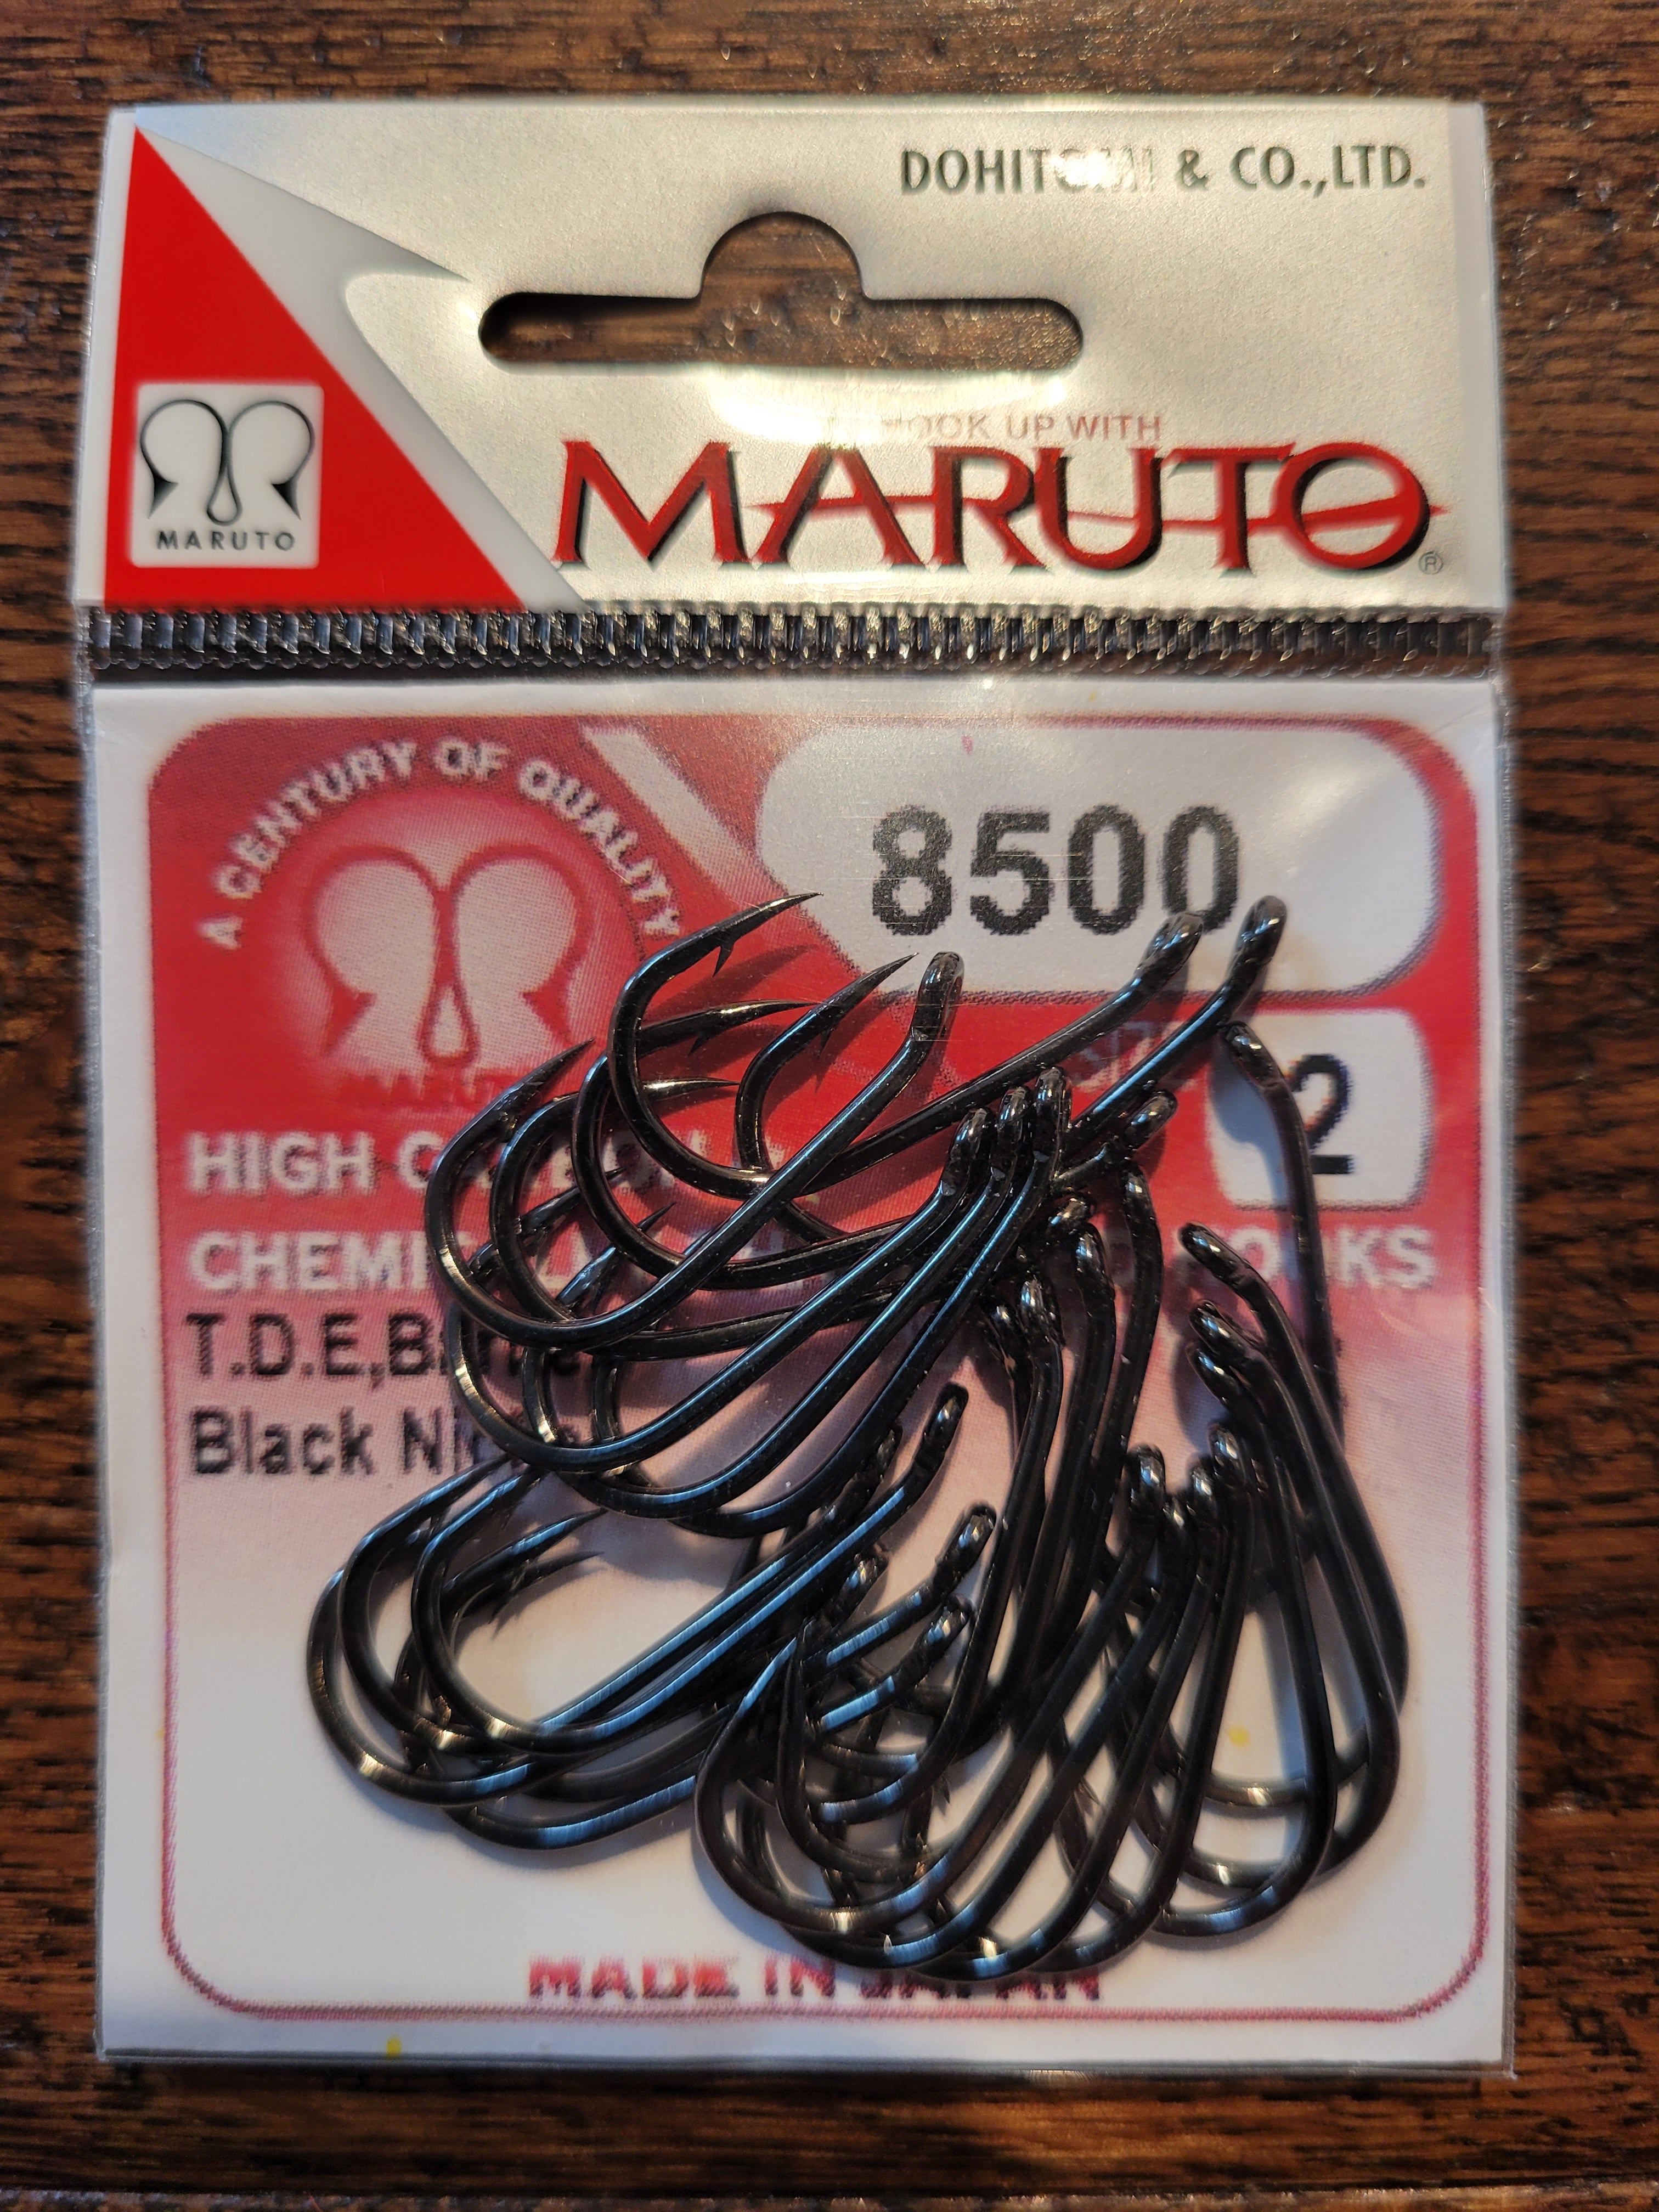 Maruto 8500 Hooks